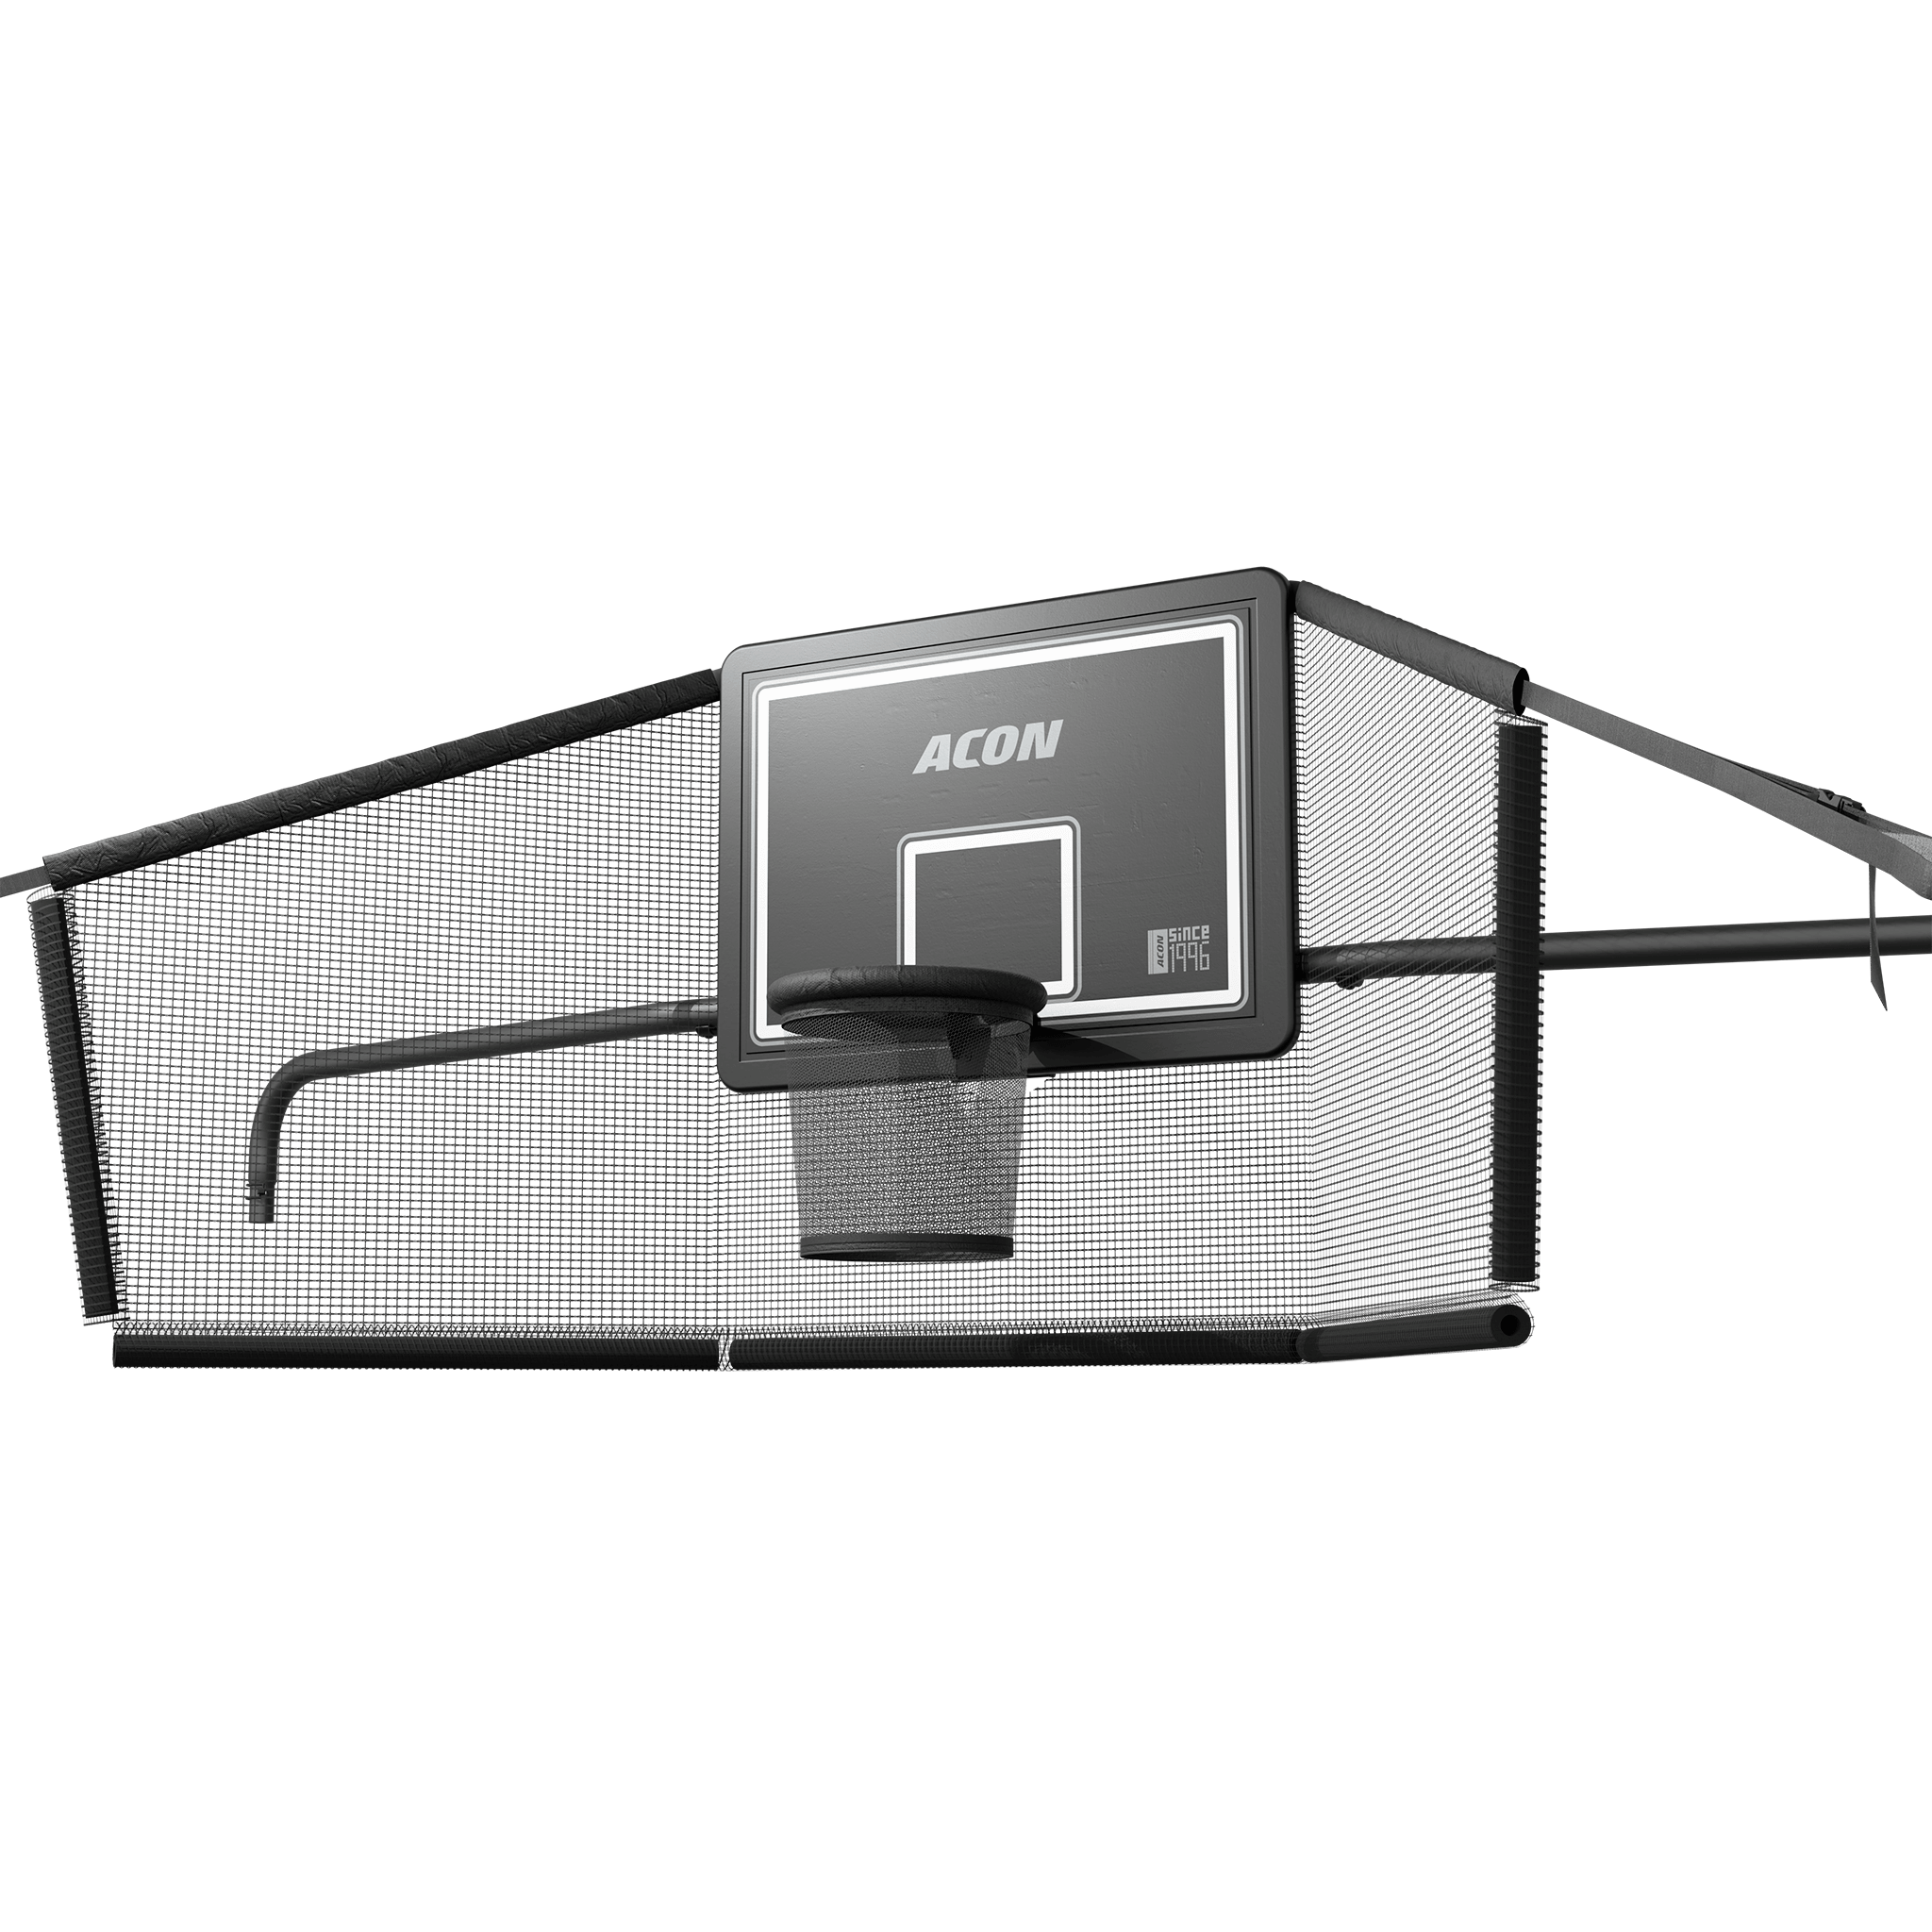 ACON X Koripallokori ja takaverkko 17ft suorakulmaiselle trampoliinille.